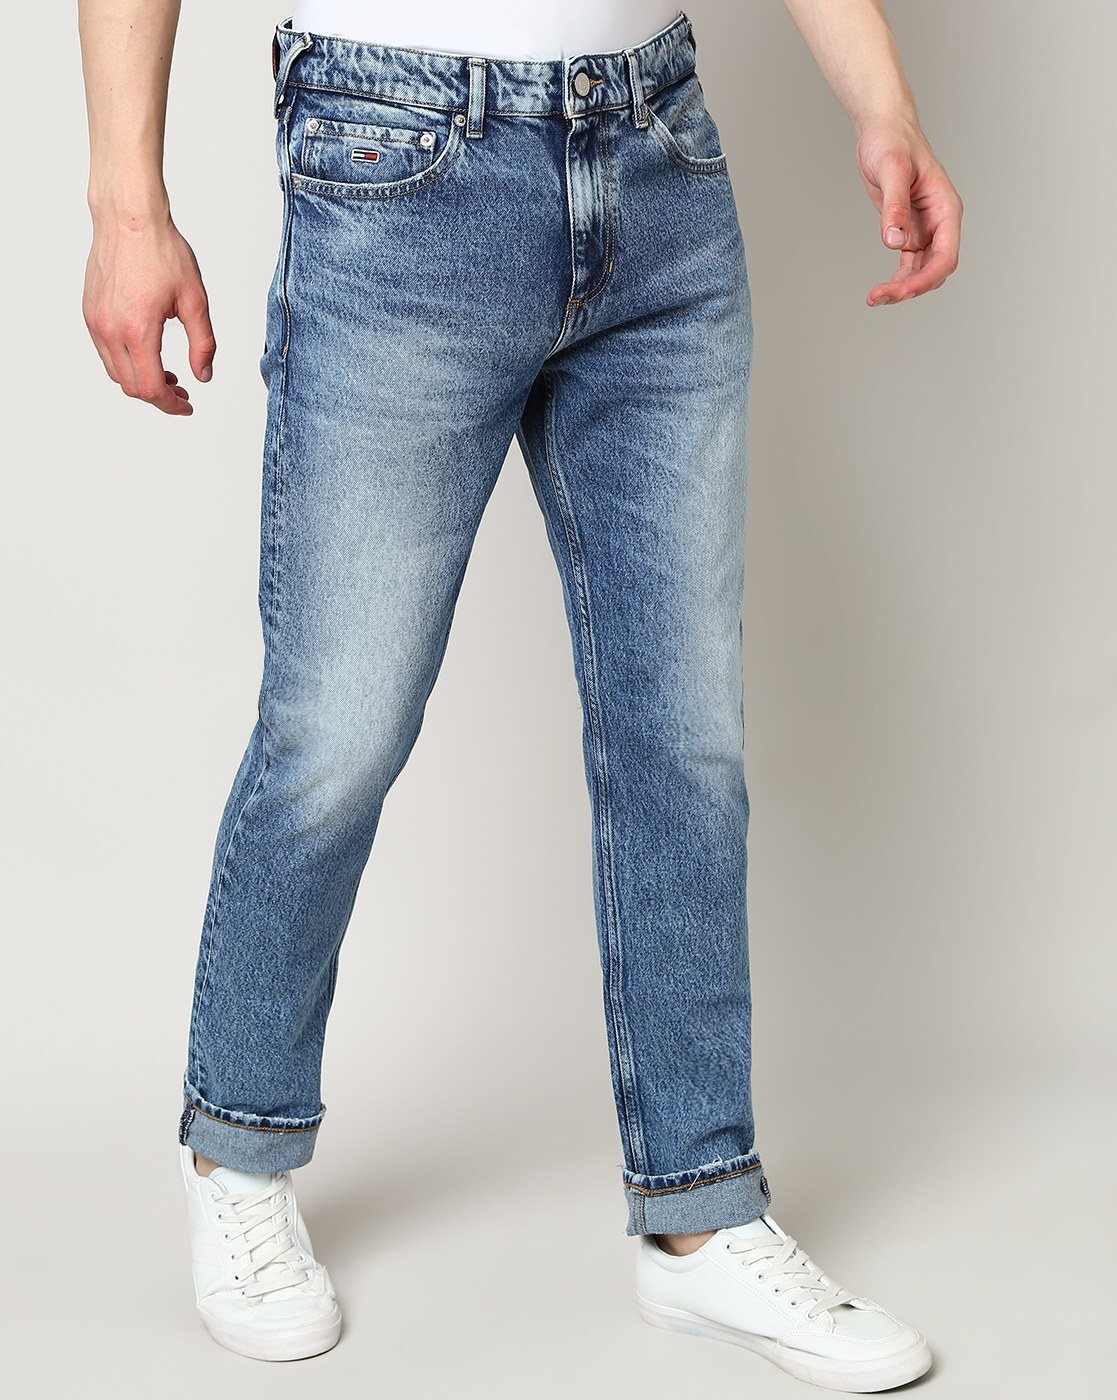 Buy Denim Medium 02 Jeans for Men by TOMMY HILFIGER Online